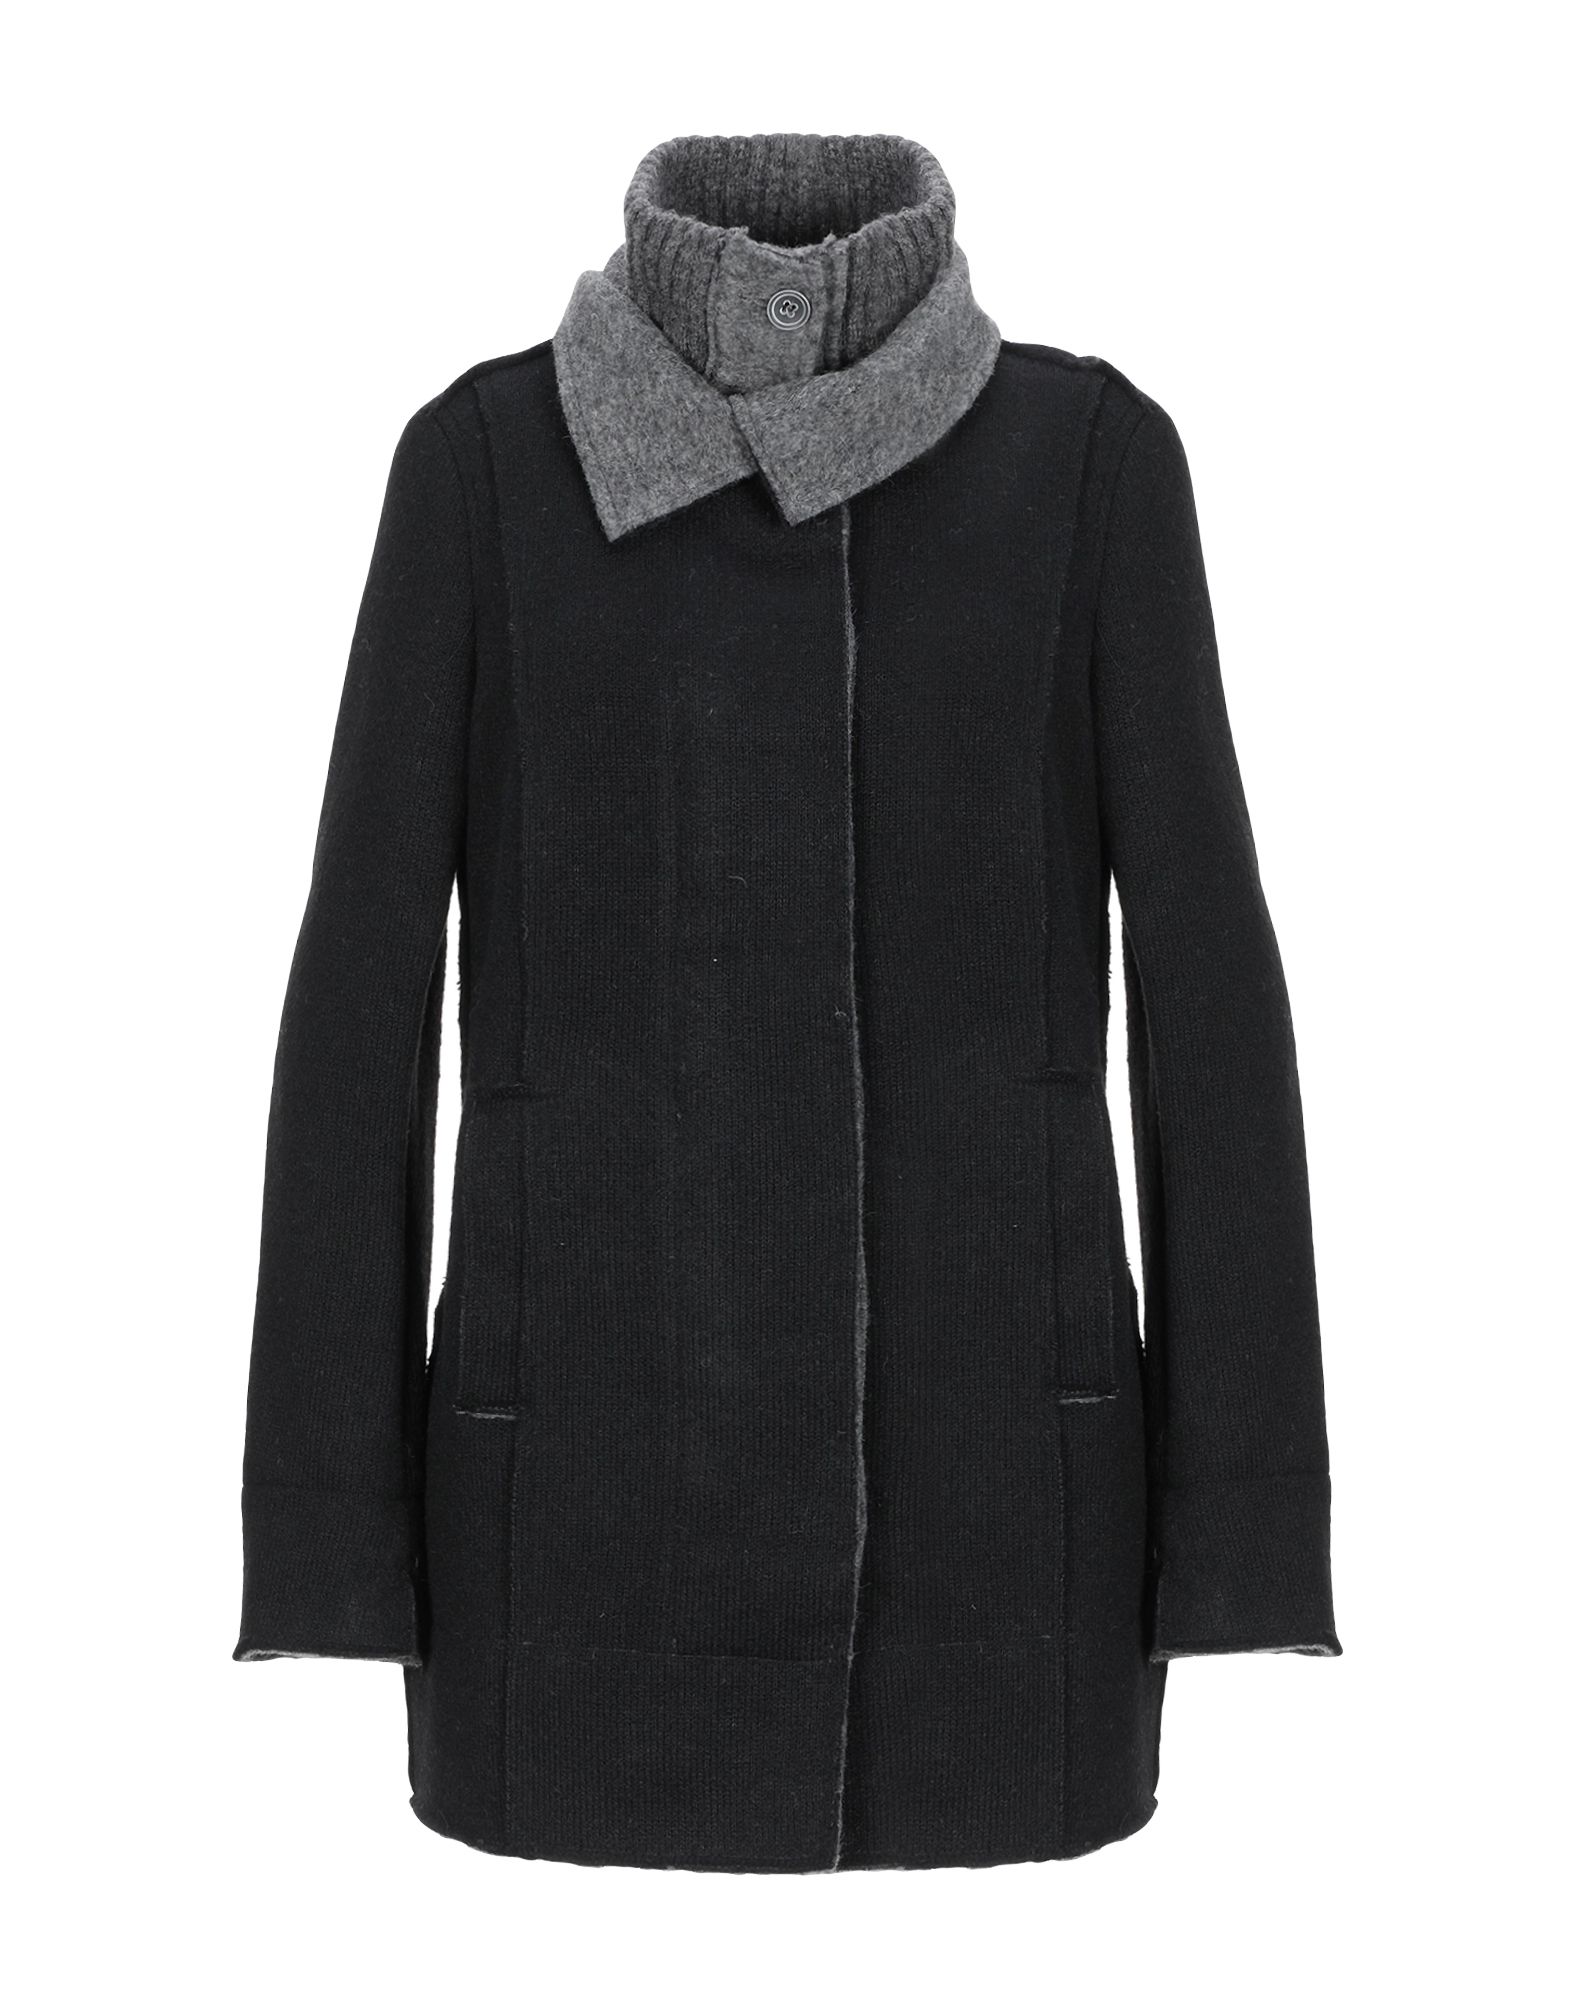 Легкое пальто  - Серый,Черный цвет